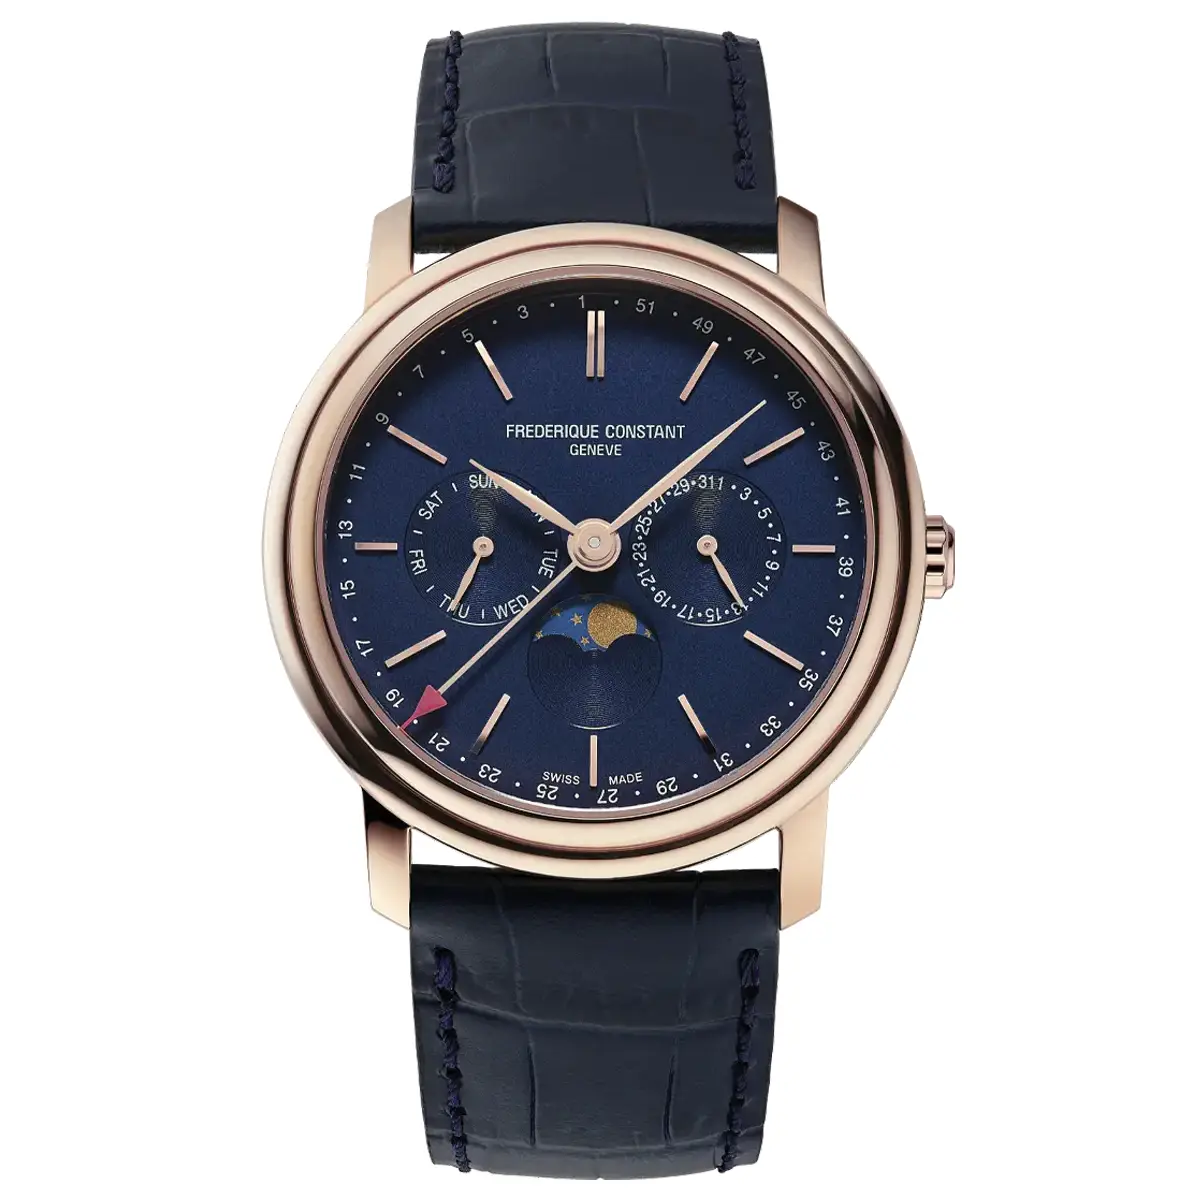 Đồng hồ Frederique Constant Classic Index Business Timer FC-270N4P4 mặt số màu xanh. Dây đeo bằng da. Thân vỏ bằng thép.